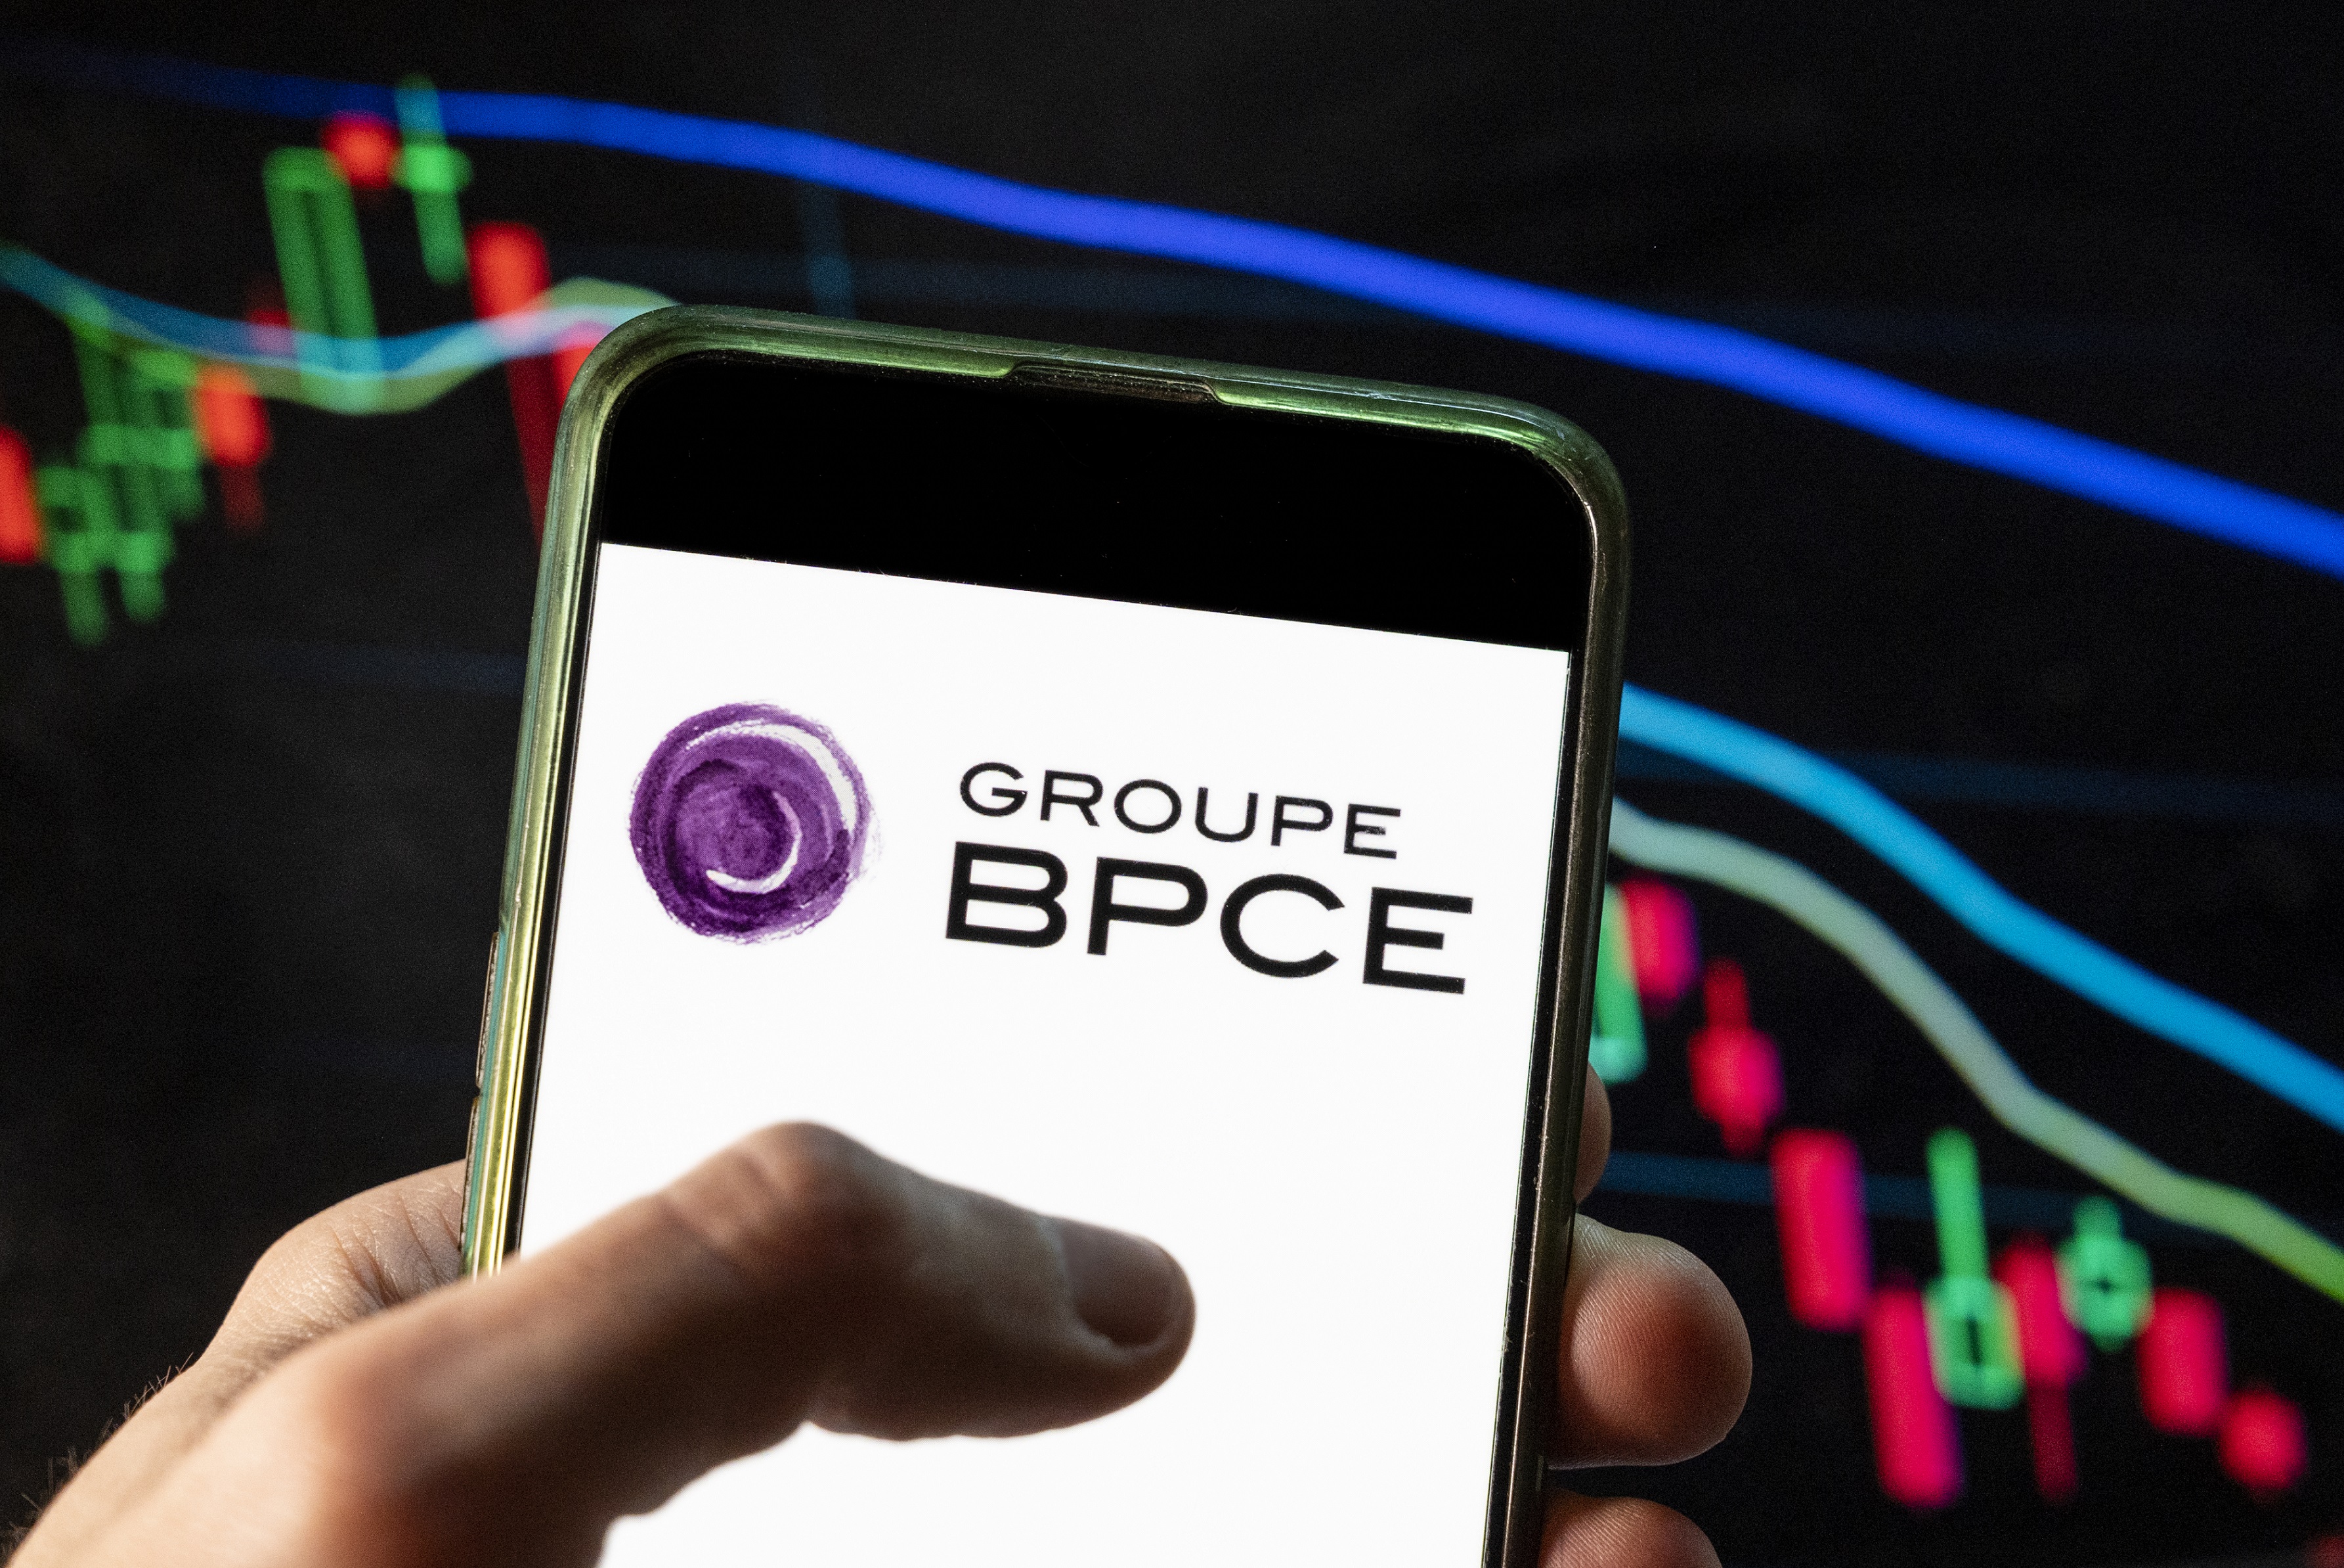 BPCE réorganise ses filiales pour créer un nouveau leader dans le paiement